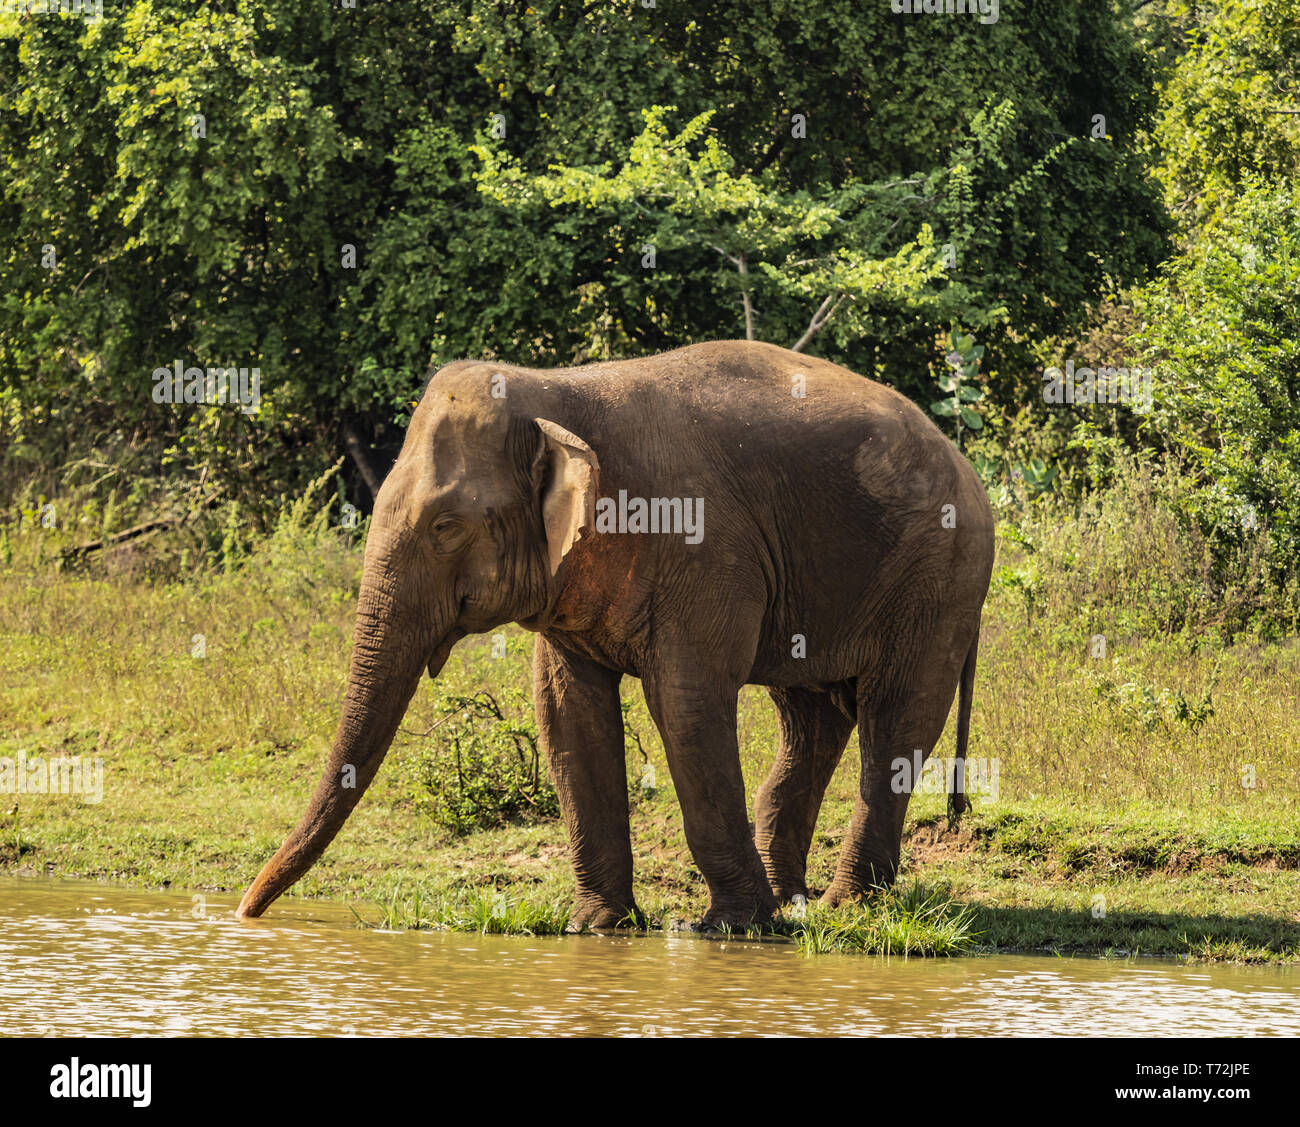 Sri Lanka - Elephant in Uda Walawe National Park Stock Photo